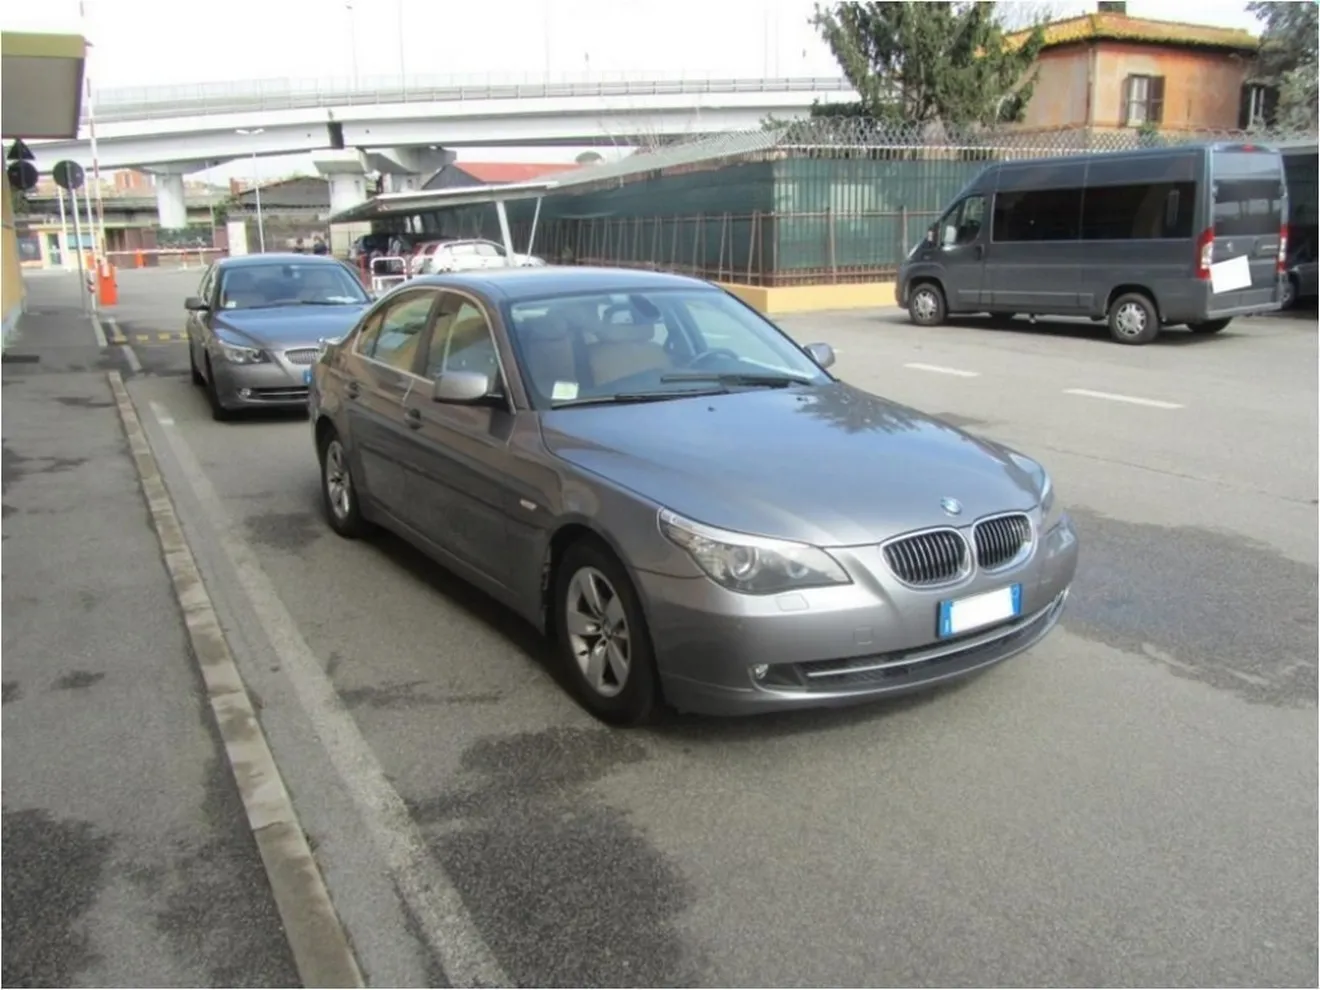 El Gobierno italiano subasta 151 coches en eBay